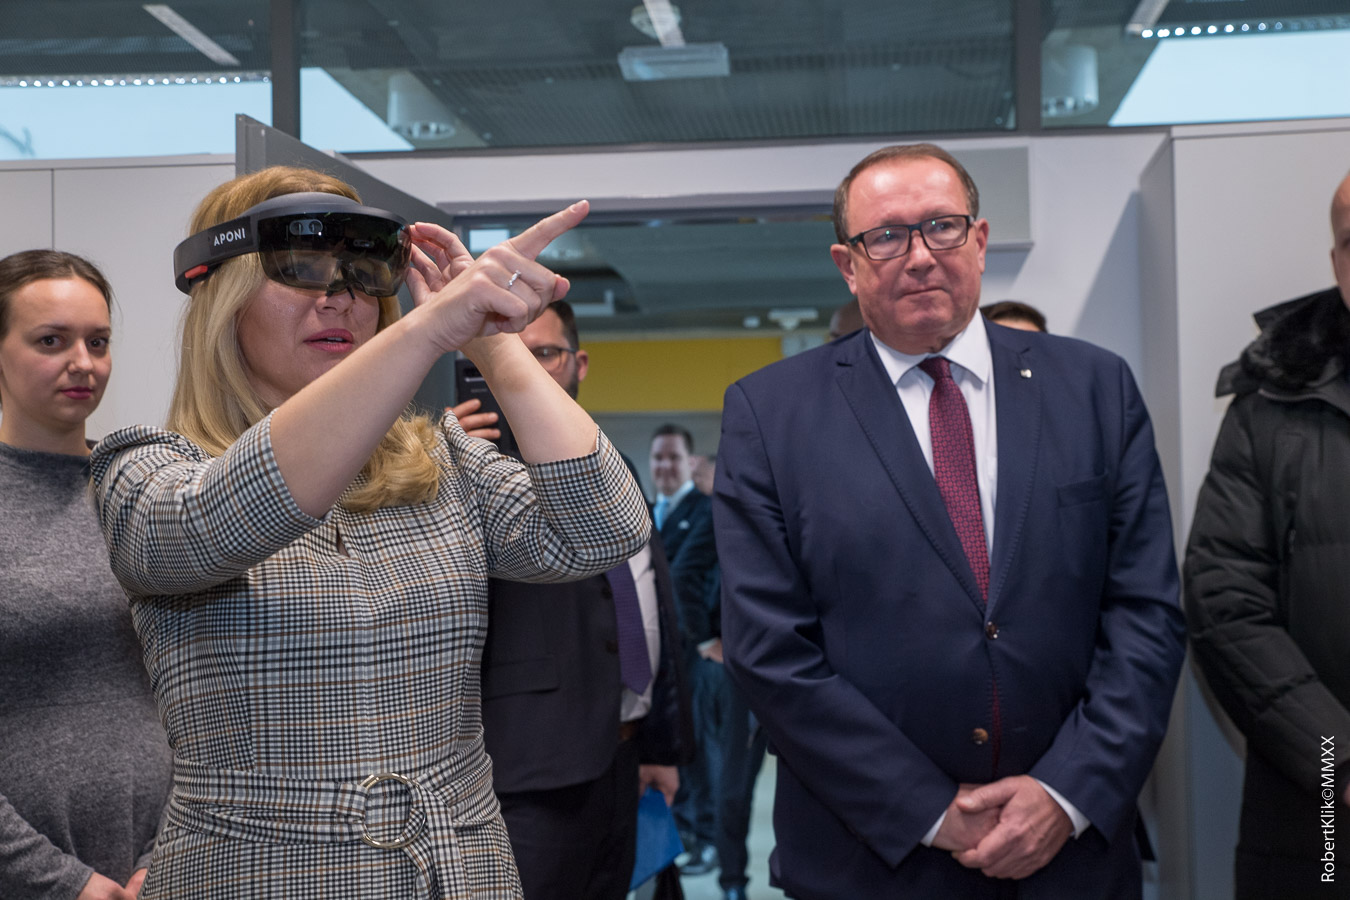 President of the Slovak Republic visited TUKE